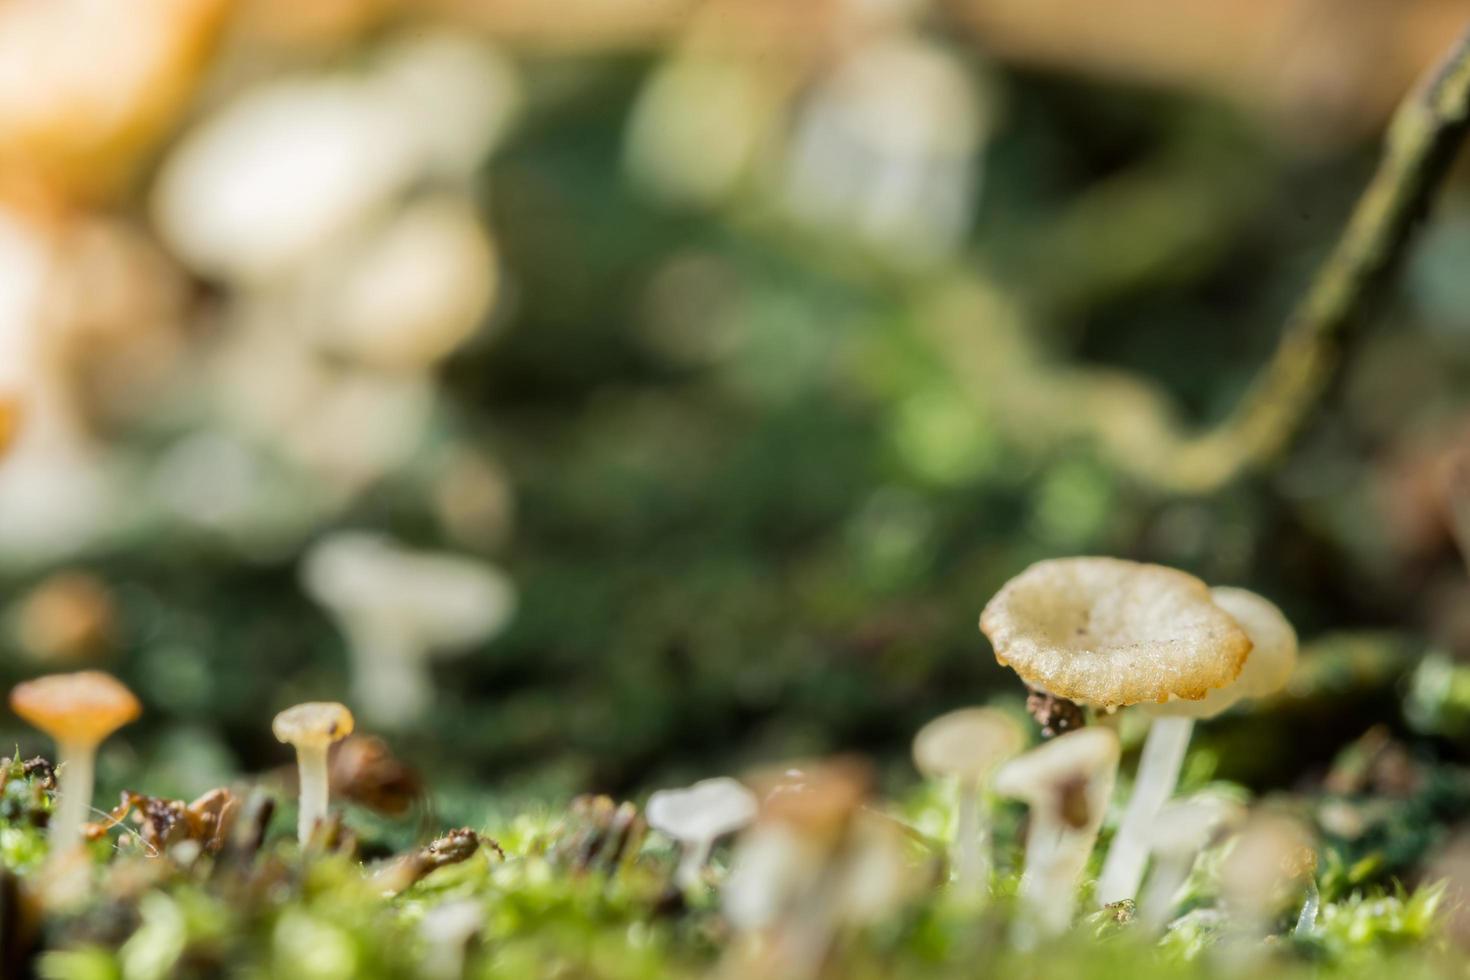 Macro gros plan de champignons bruns à l'état sauvage photo